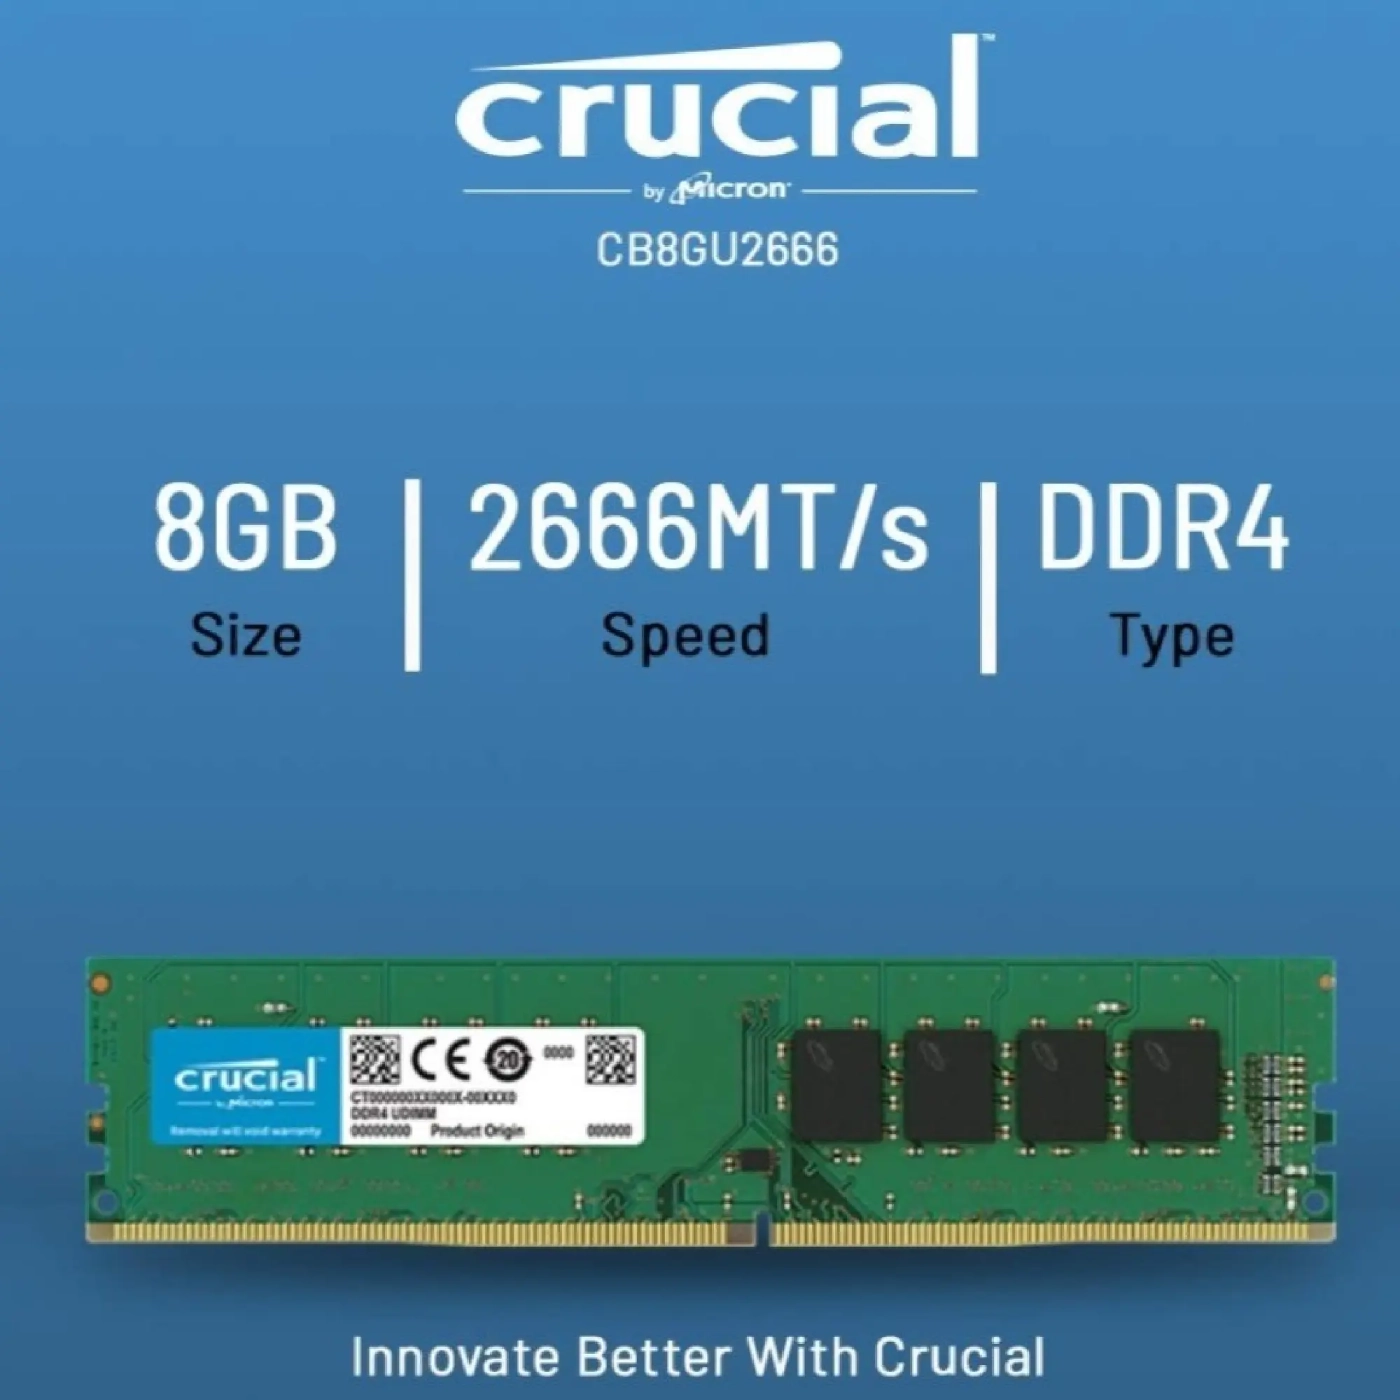 Купить Модуль памяти Crucial CB8GU2666 8GB - фото 2